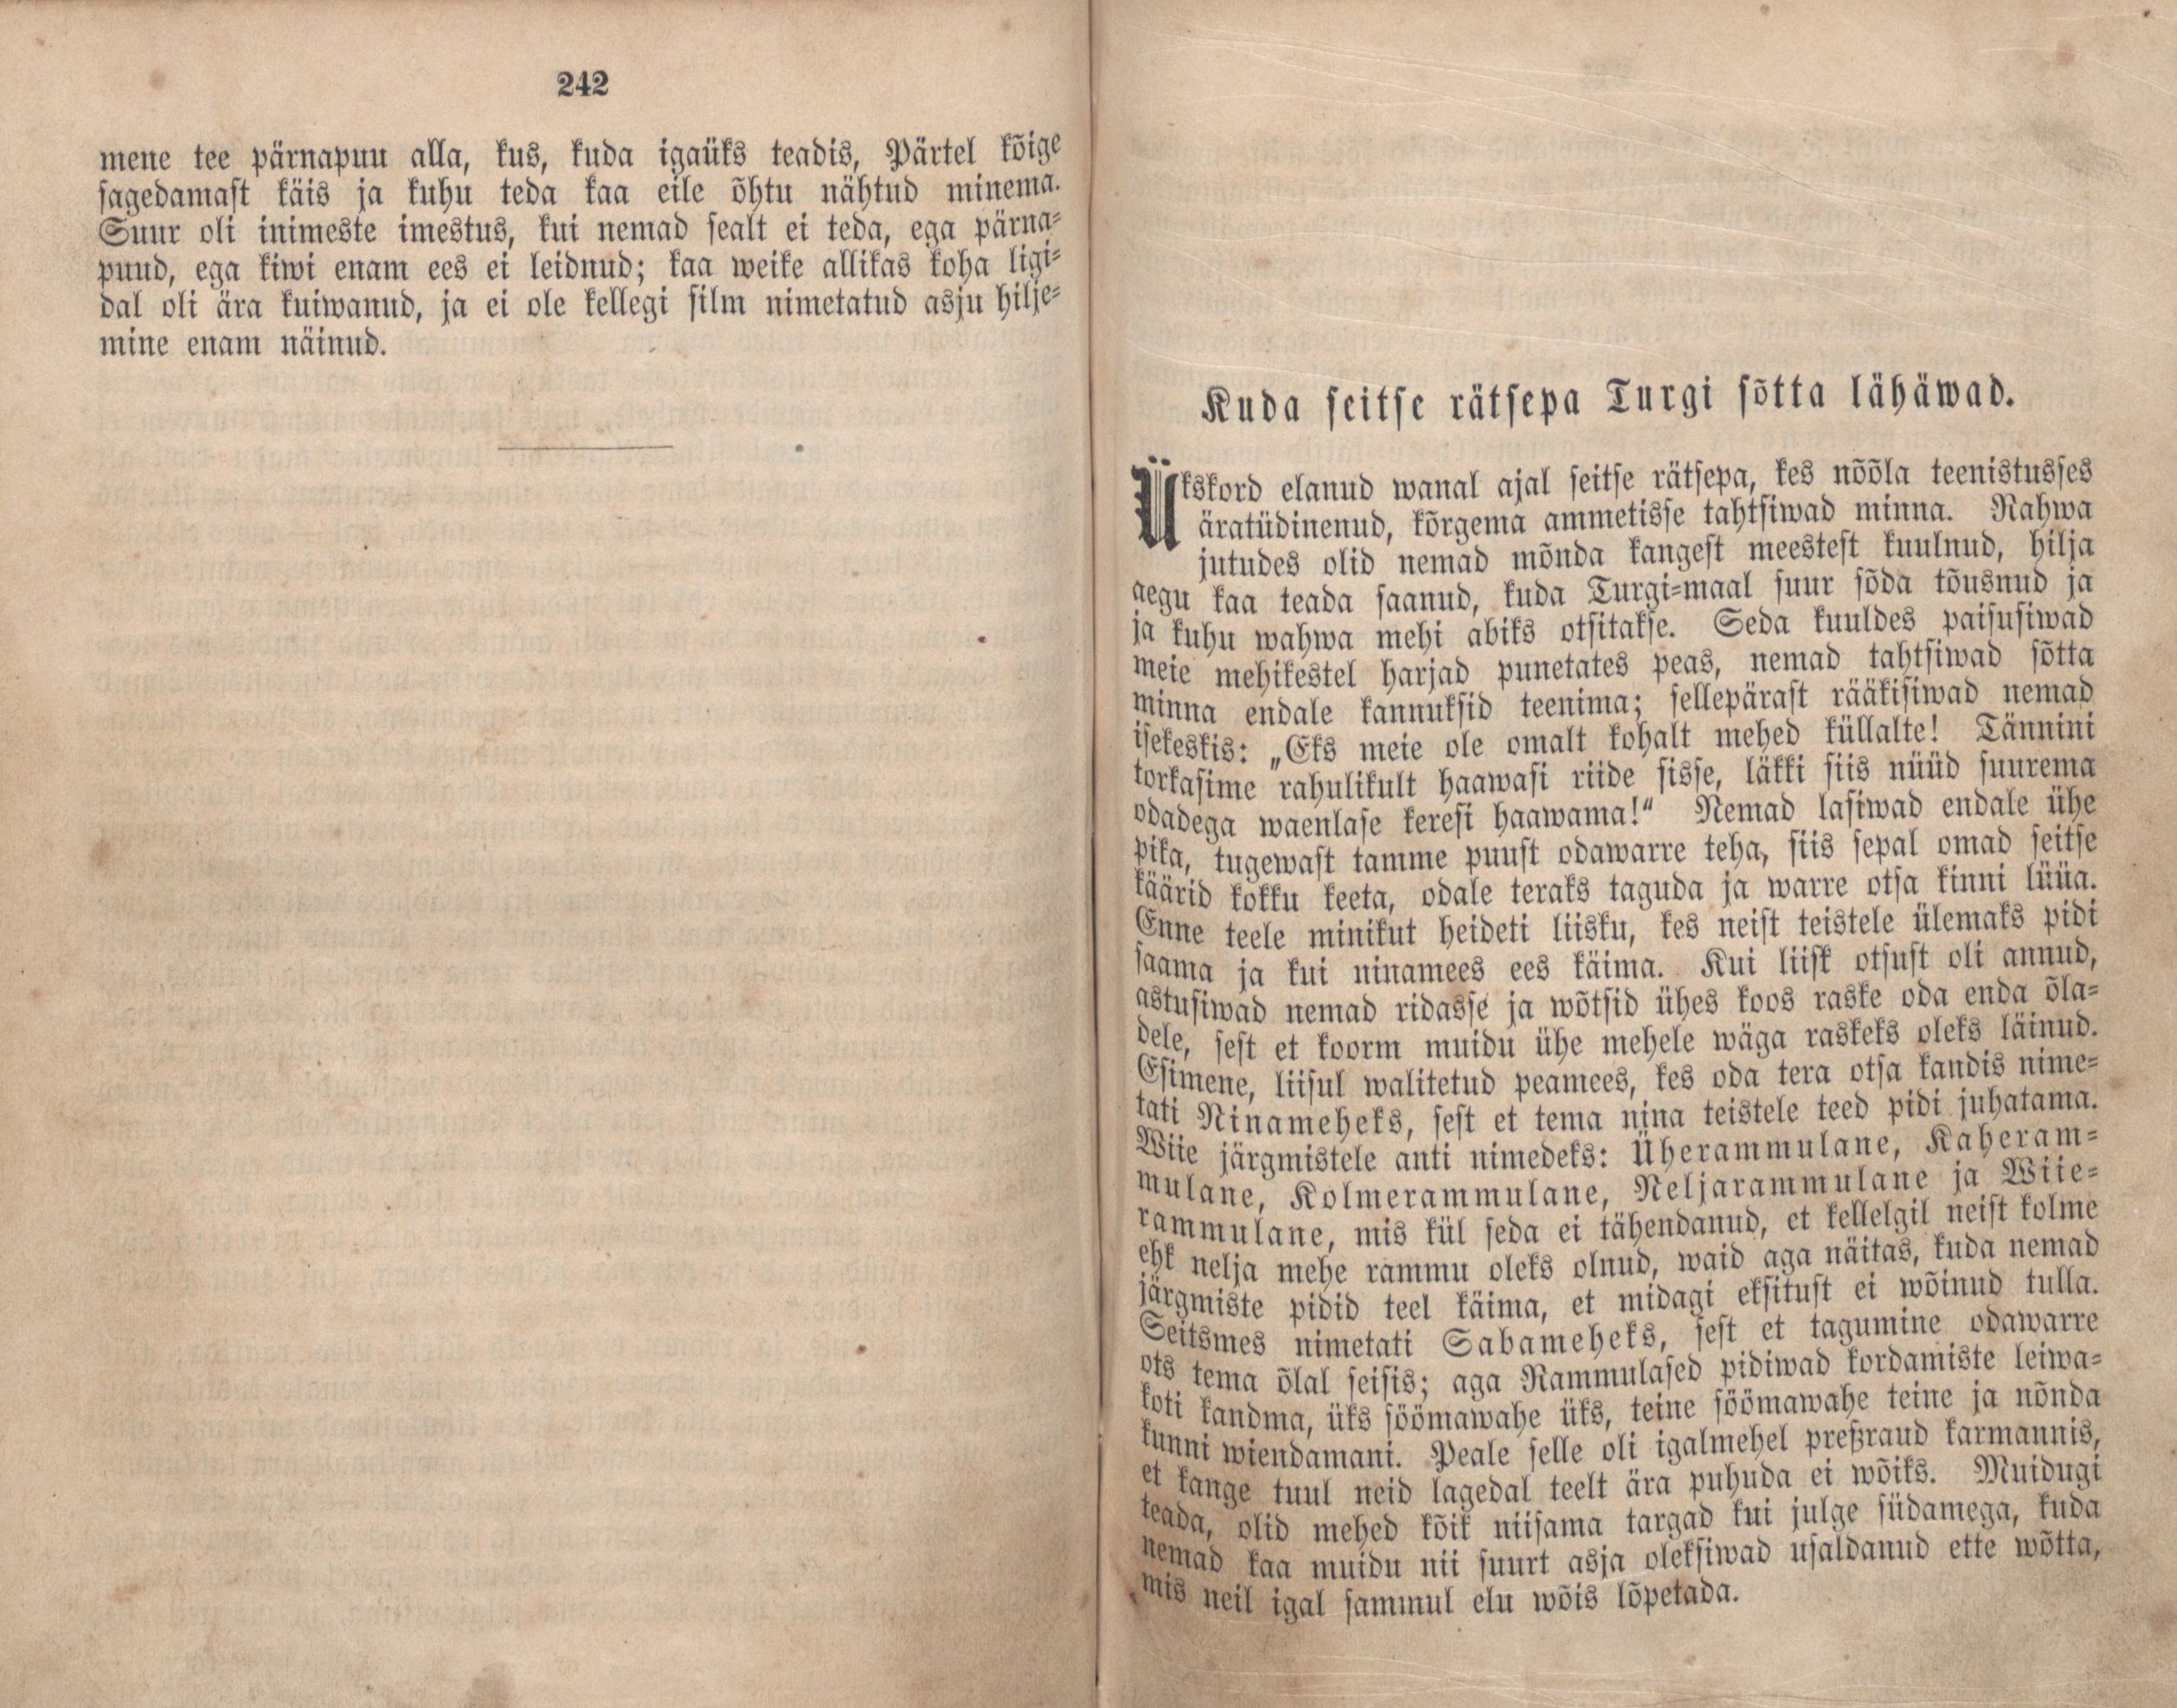 Kuda seitse rätsepa Turgi sõtta lähäwad (1866) | 1. (242-243) Main body of text